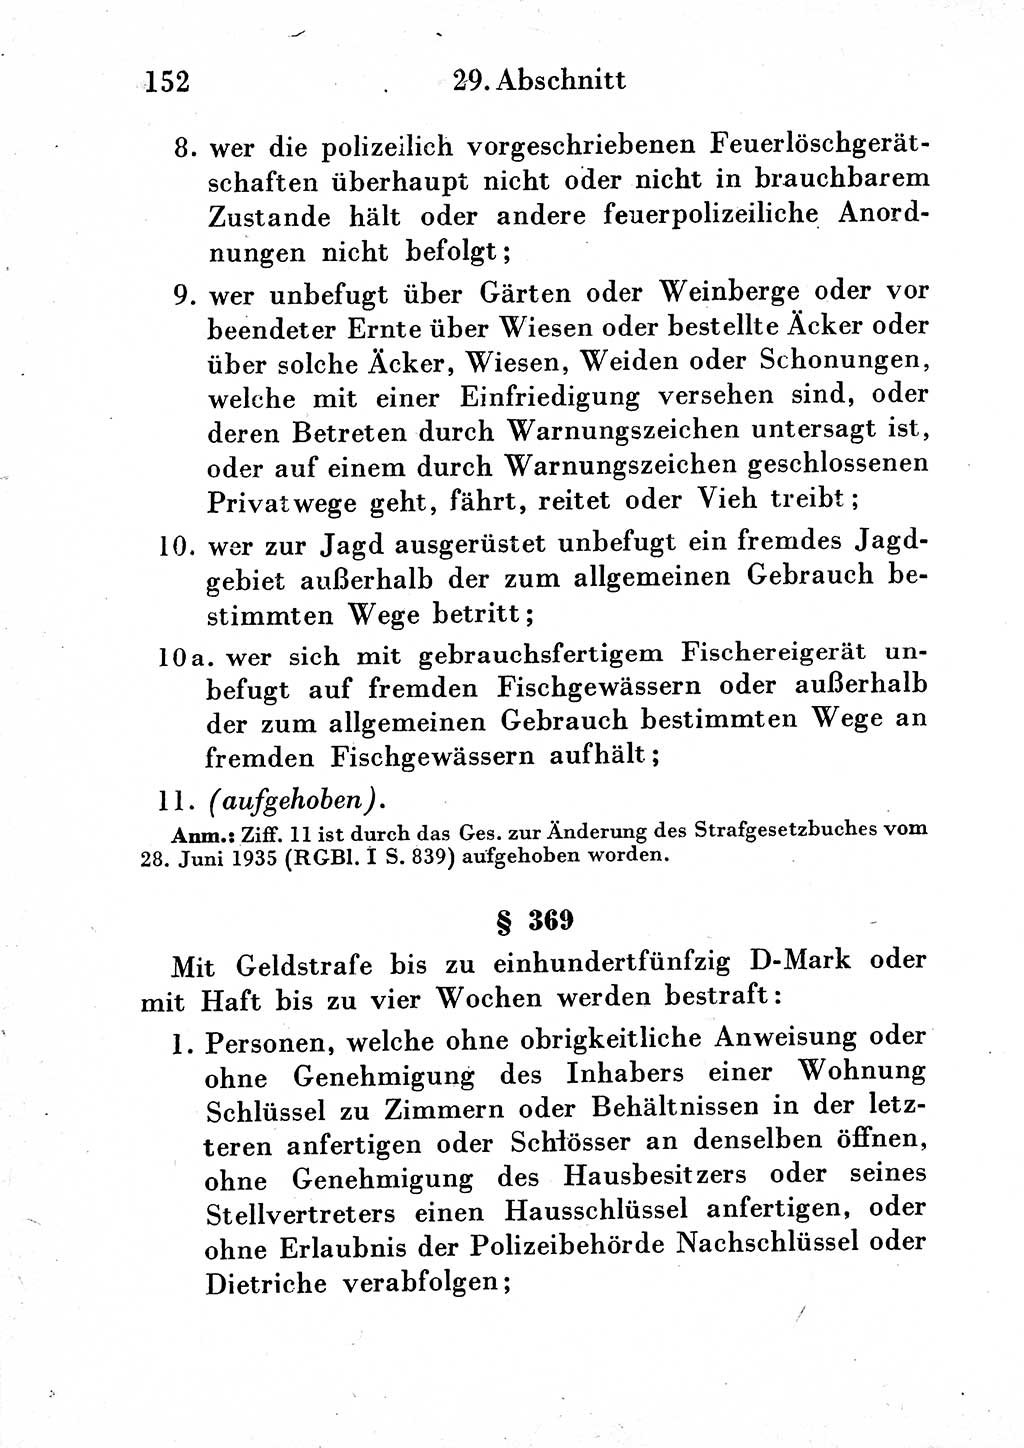 Strafgesetzbuch (StGB) und andere Strafgesetze [Deutsche Demokratische Republik (DDR)] 1954, Seite 152 (StGB Strafges. DDR 1954, S. 152)